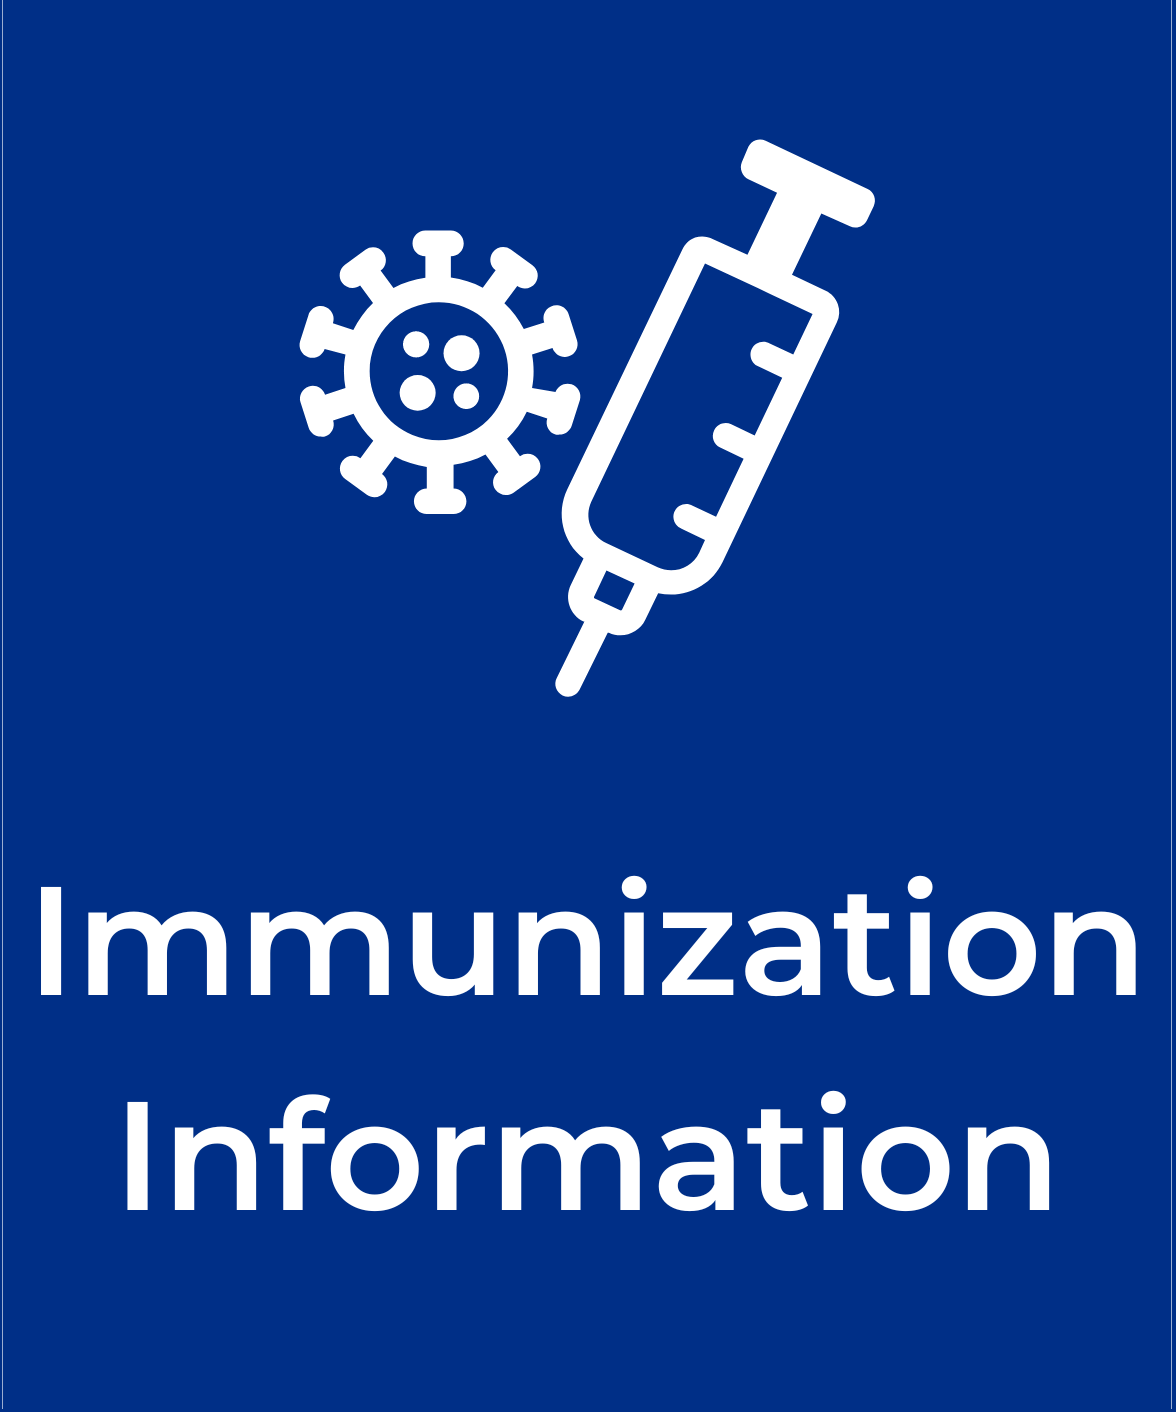 Link to immunization info